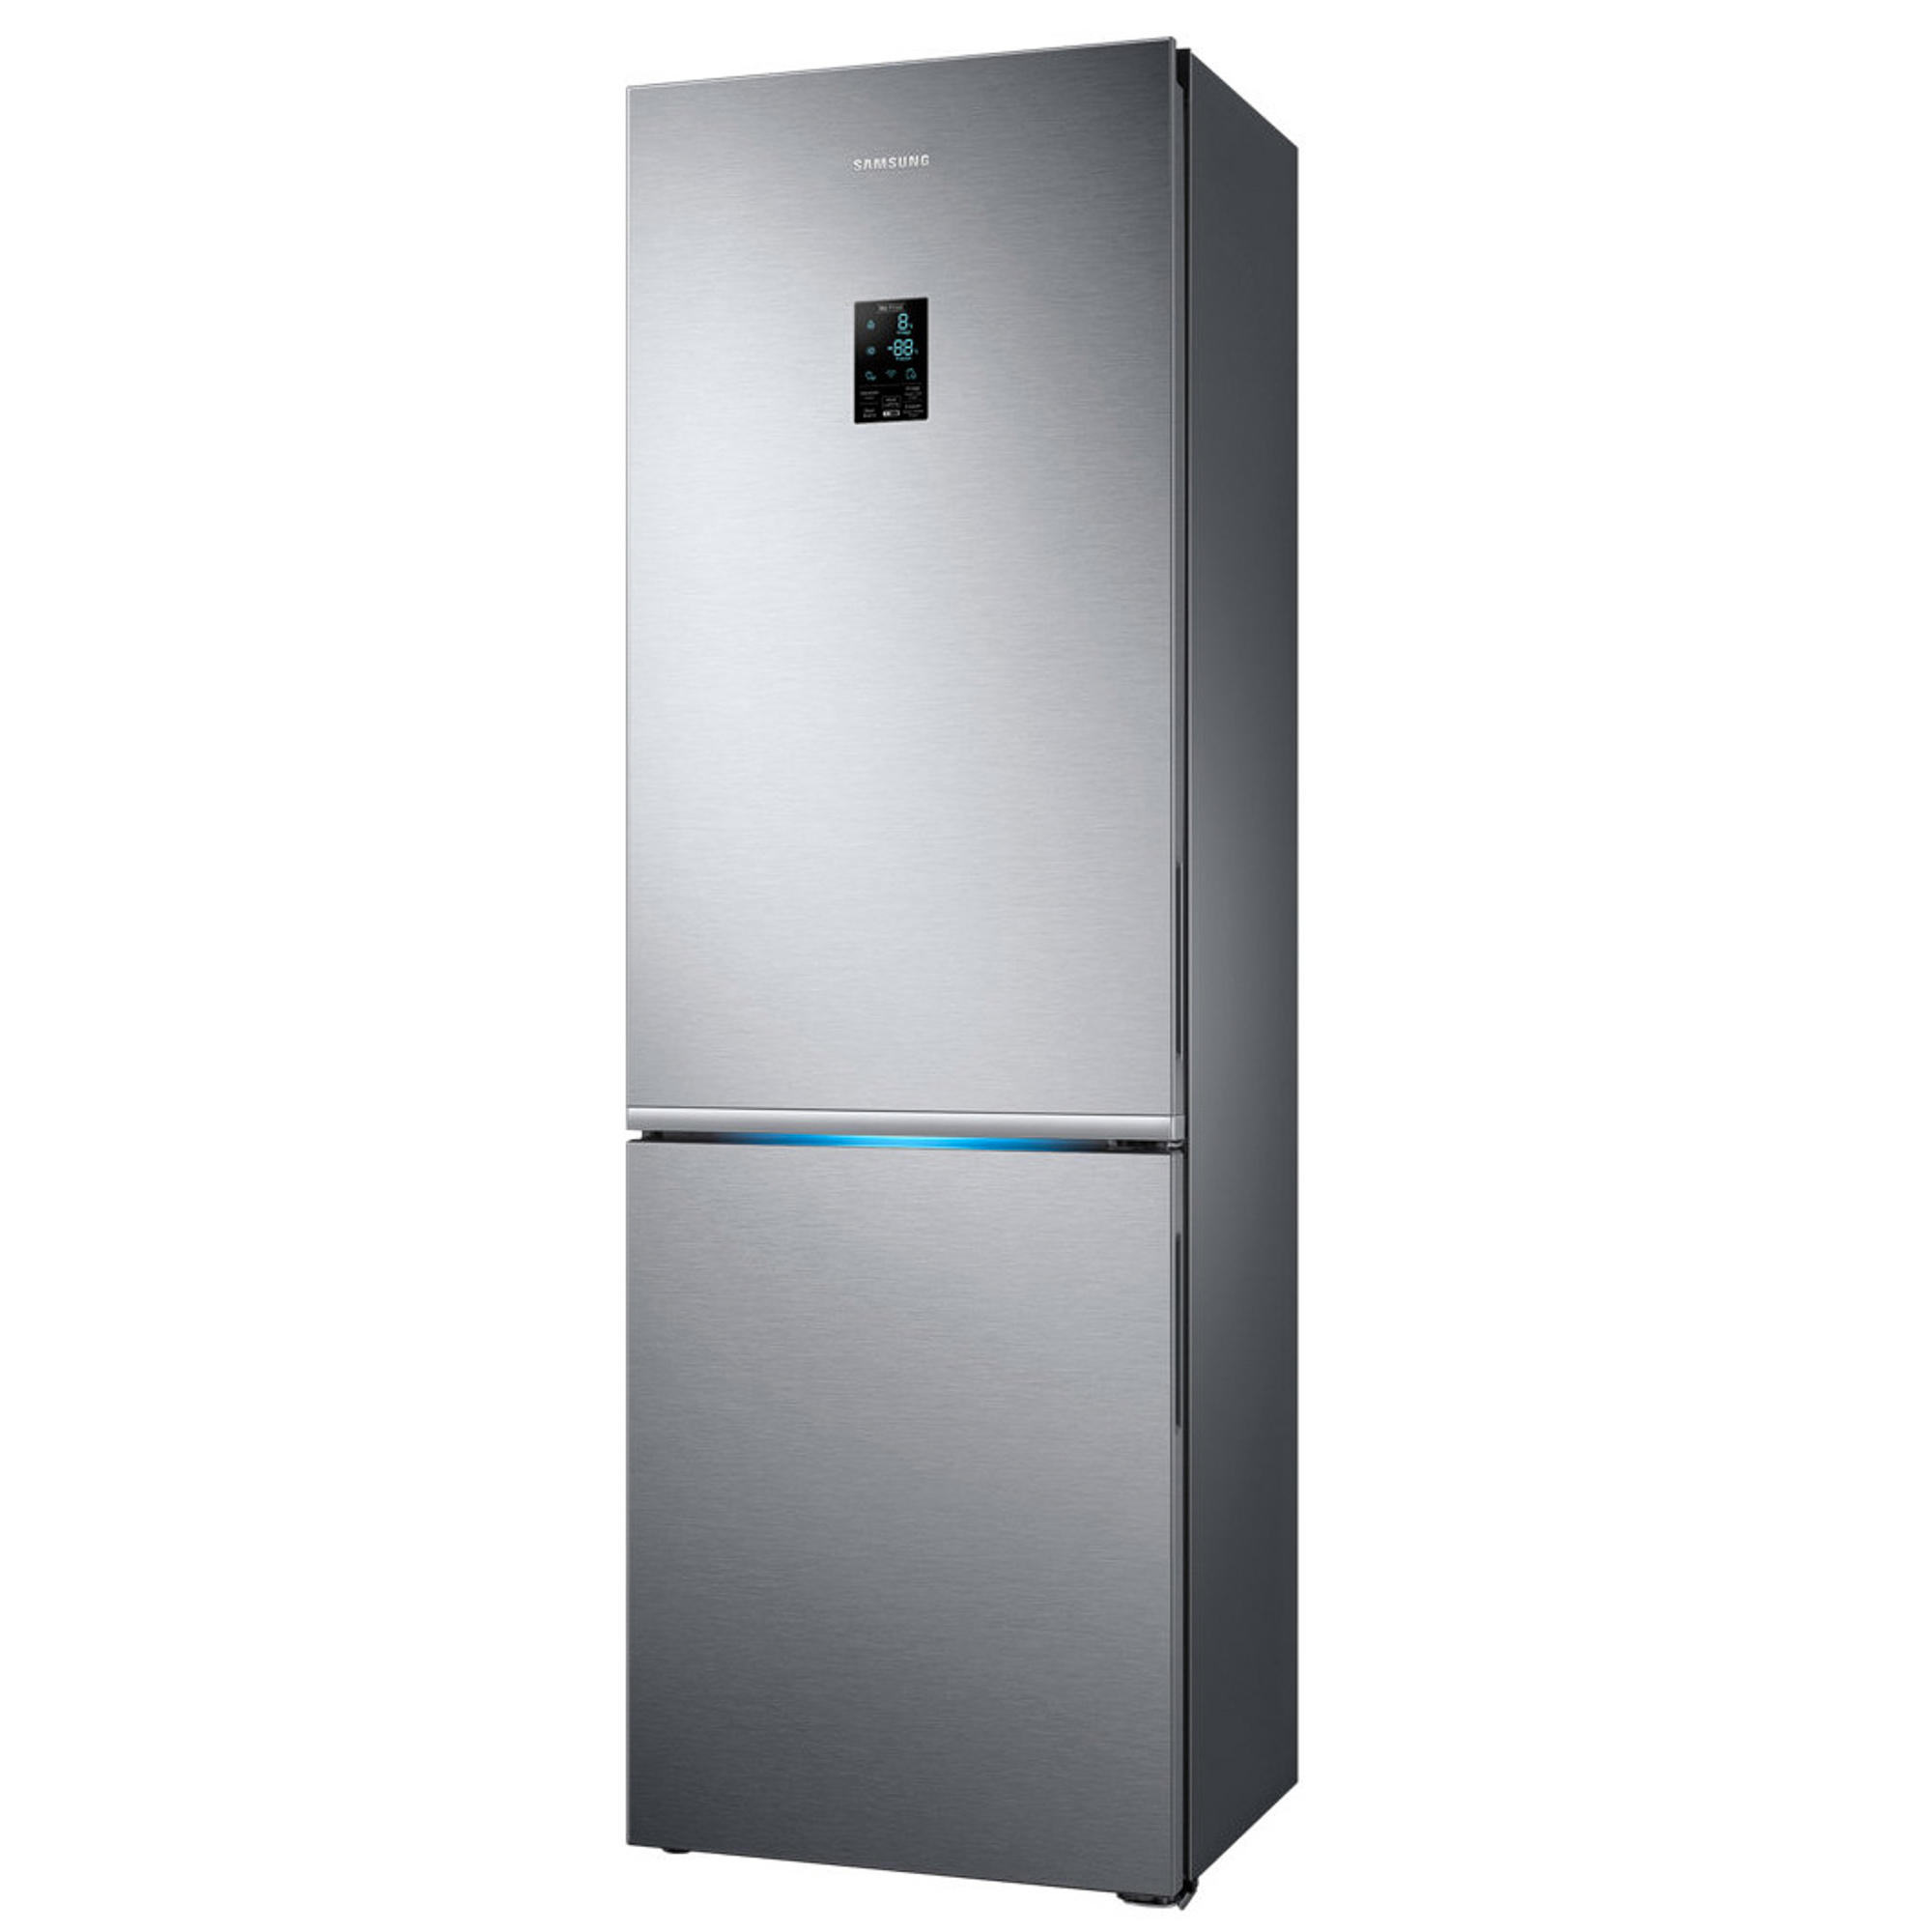 Холодильник Samsung RB34K6220S4 Silver, цвет серебристый RB34K6220S4/WT - фото 3